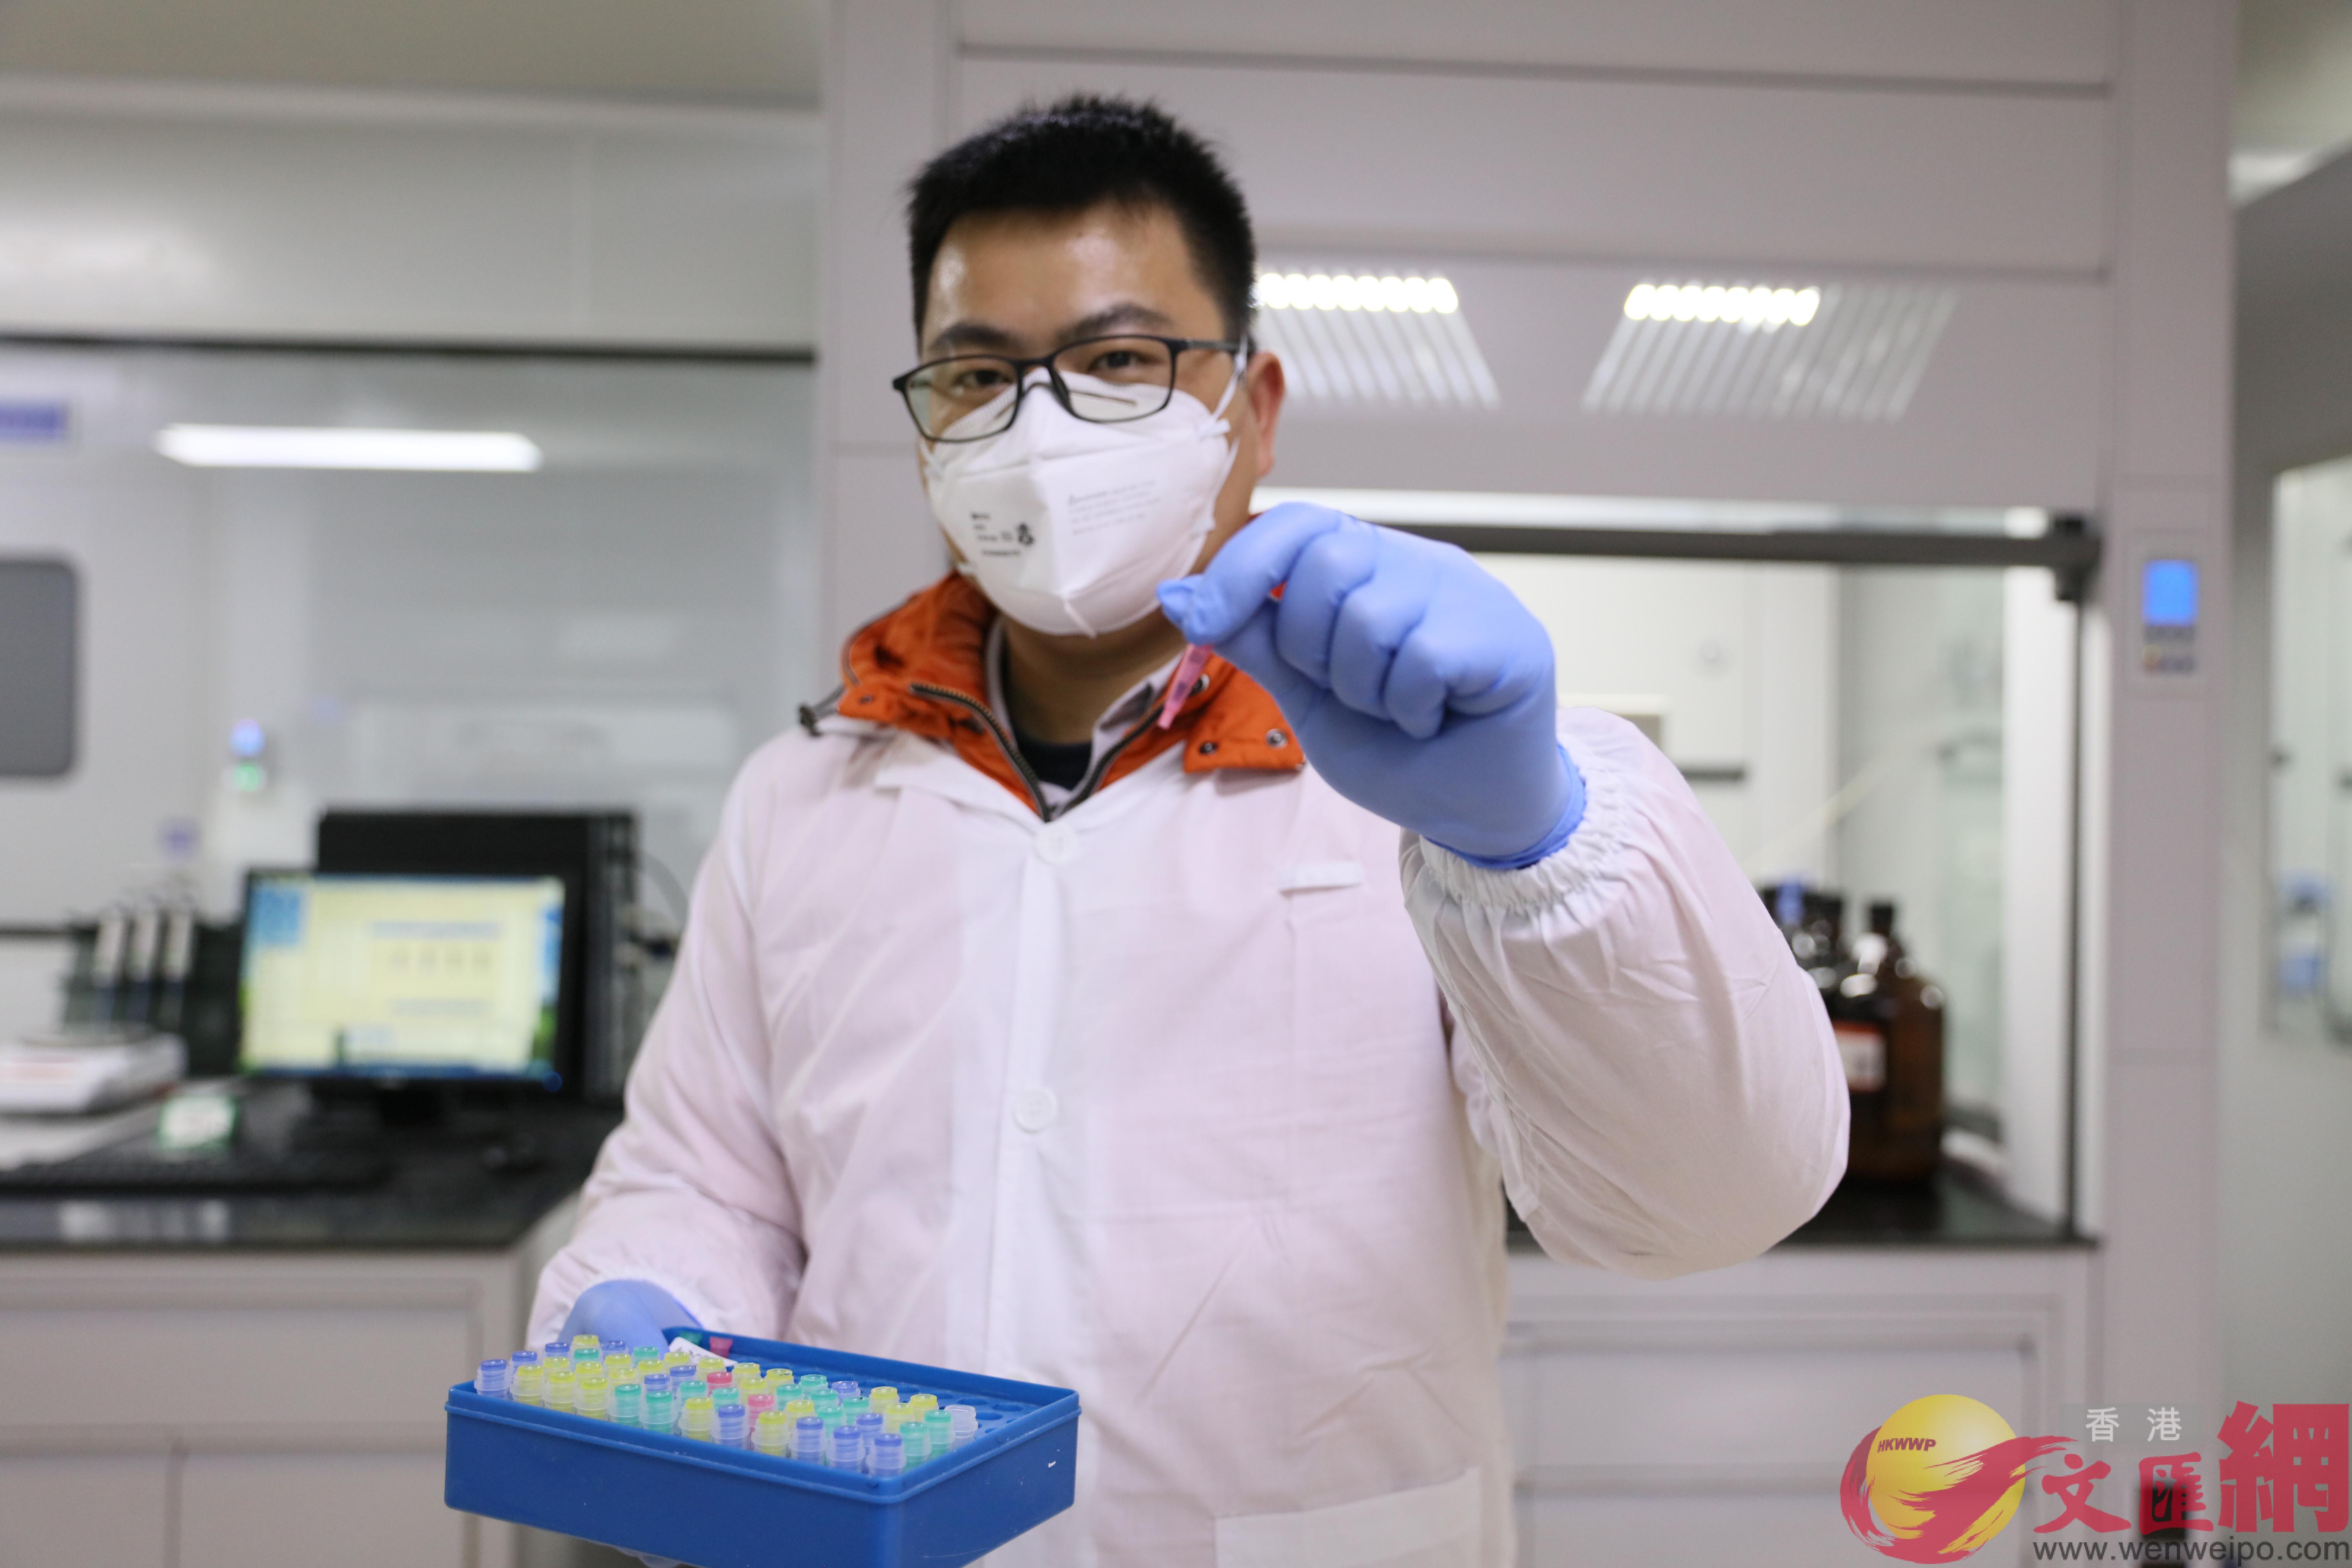 中國新冠肺炎檢測試劑盒性能國際領先C圖為廣州一家研發機構展示最新研制的檢測產品C敖敏輝攝